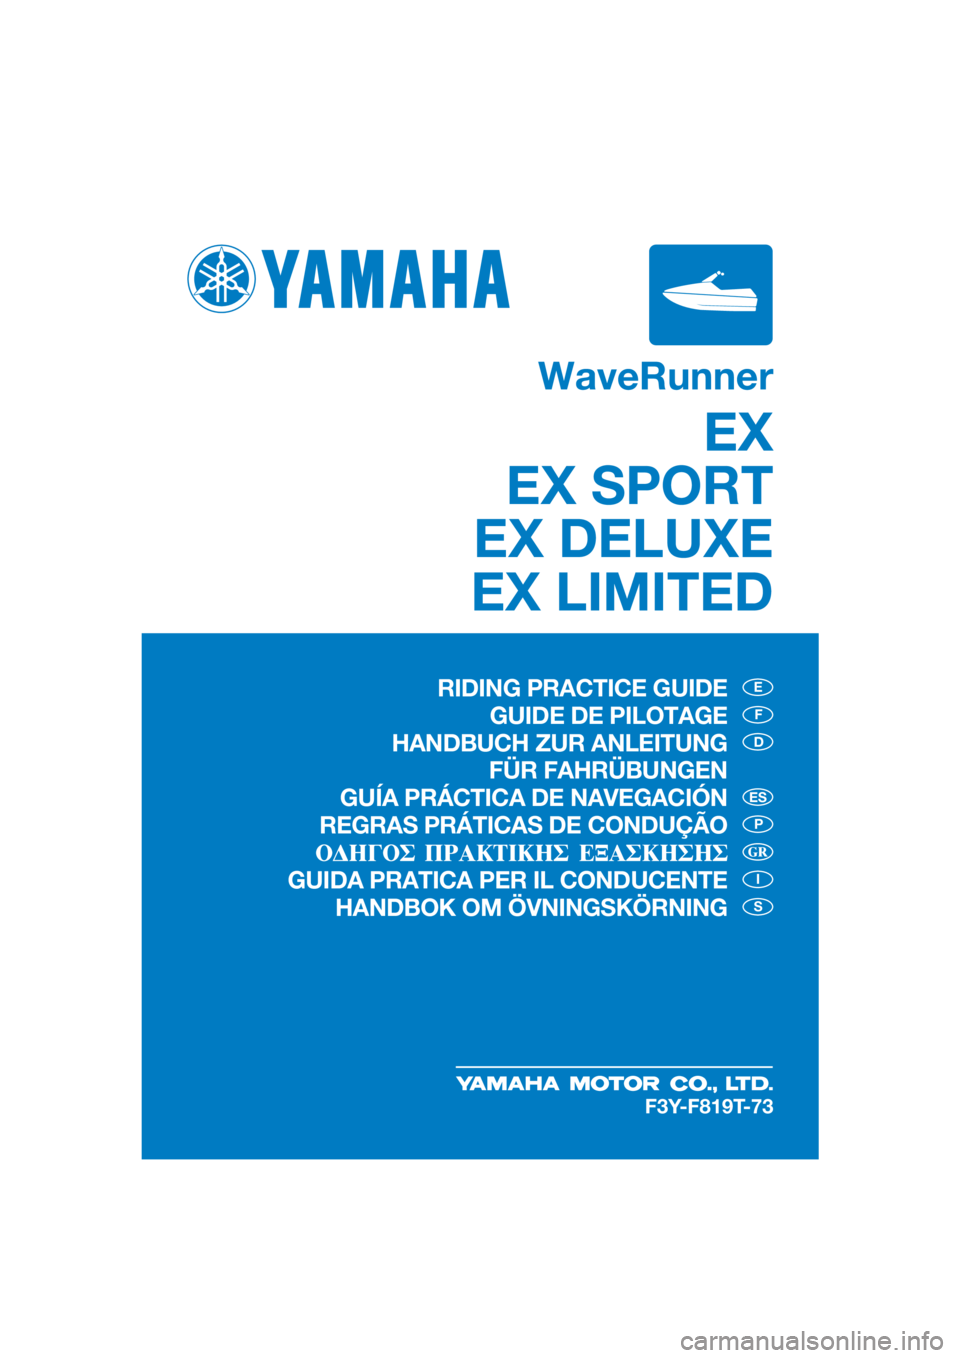 YAMAHA EX 2021  Bruksanvisningar (in Swedish) WaveRunner
EX
EX SPORT
EX DELUXE
EX LIMITED
E
F
D
P
I
S
ES
F3Y-F819T-73
RIDING PRACTICE GUIDE
GUIDE DE PILOTAGE
HANDBUCH ZUR ANLEITUNG  FÜR FAHRÜBUNGEN
GUÍA PRÁCTICA DE NAVEGACIÓN
REGRAS PRÁTICA